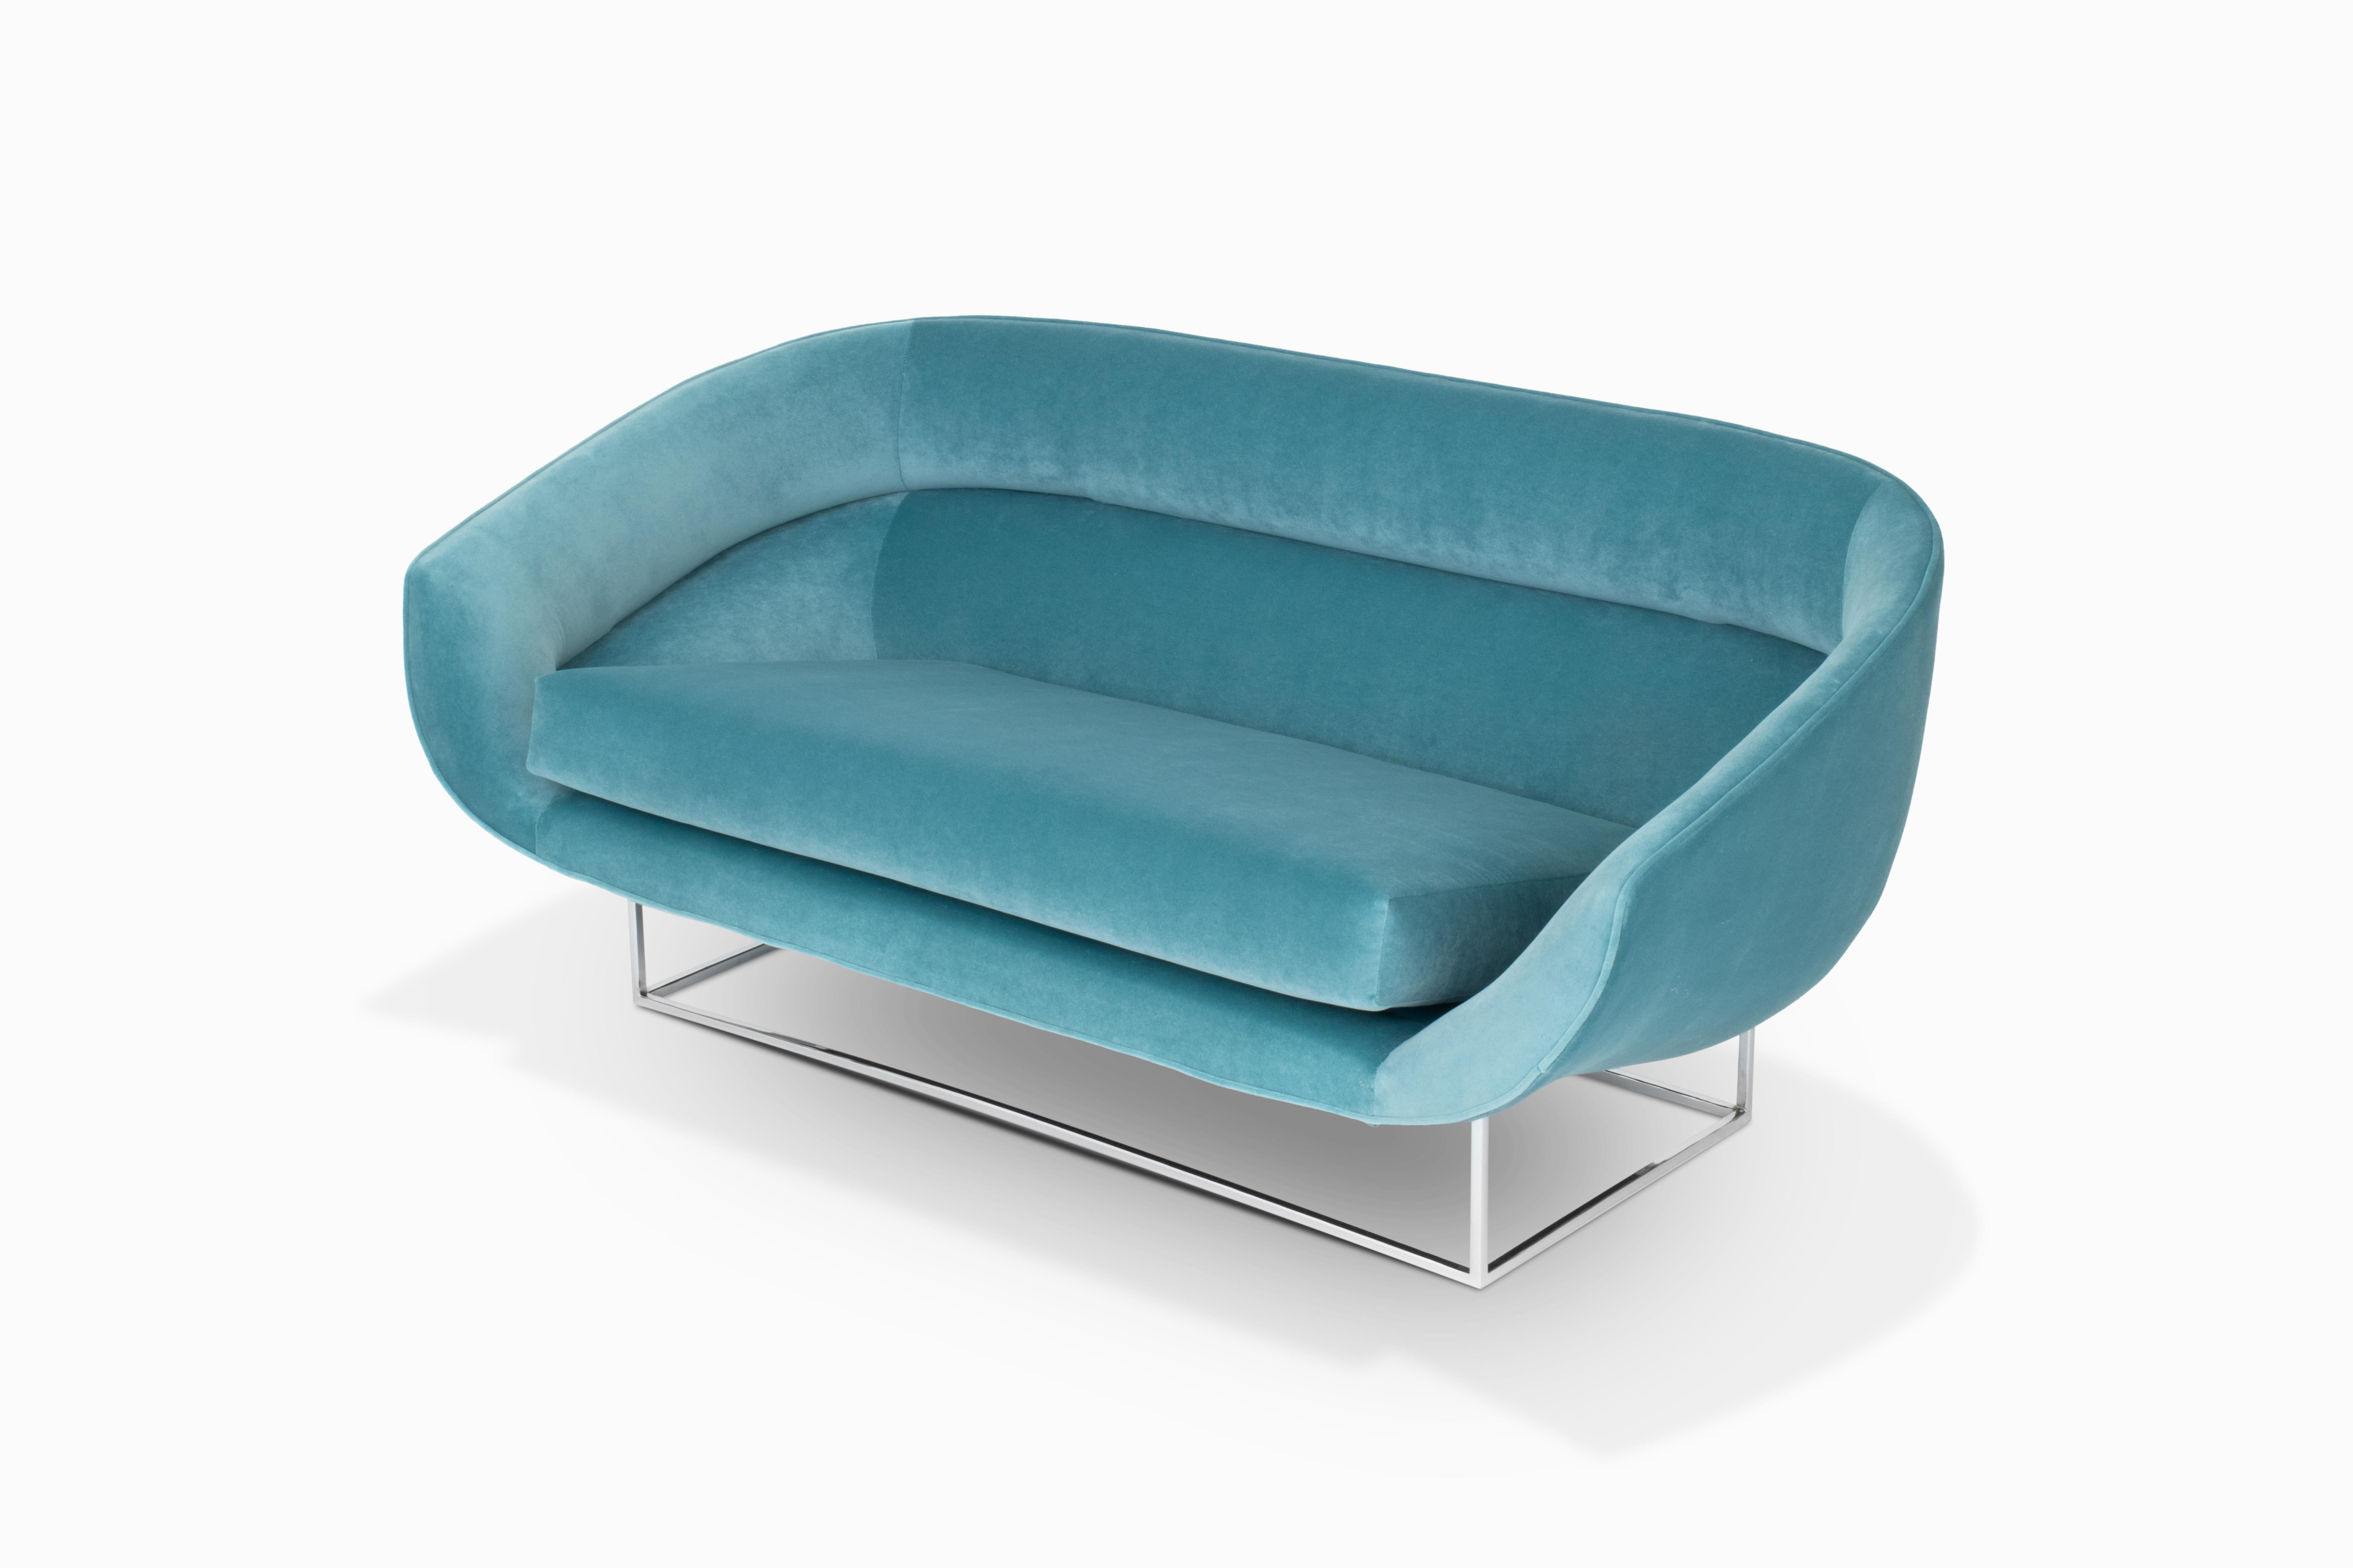 Voici un canapé flottant d'une remarquable beauté, réalisé par Milo Baughman / Thayer. Les sièges aux formes arrondies ont été recouverts d'un luxueux velours bleu turquoise. Il repose sur une base métallique nouvellement chromée. Il s'agit d'un